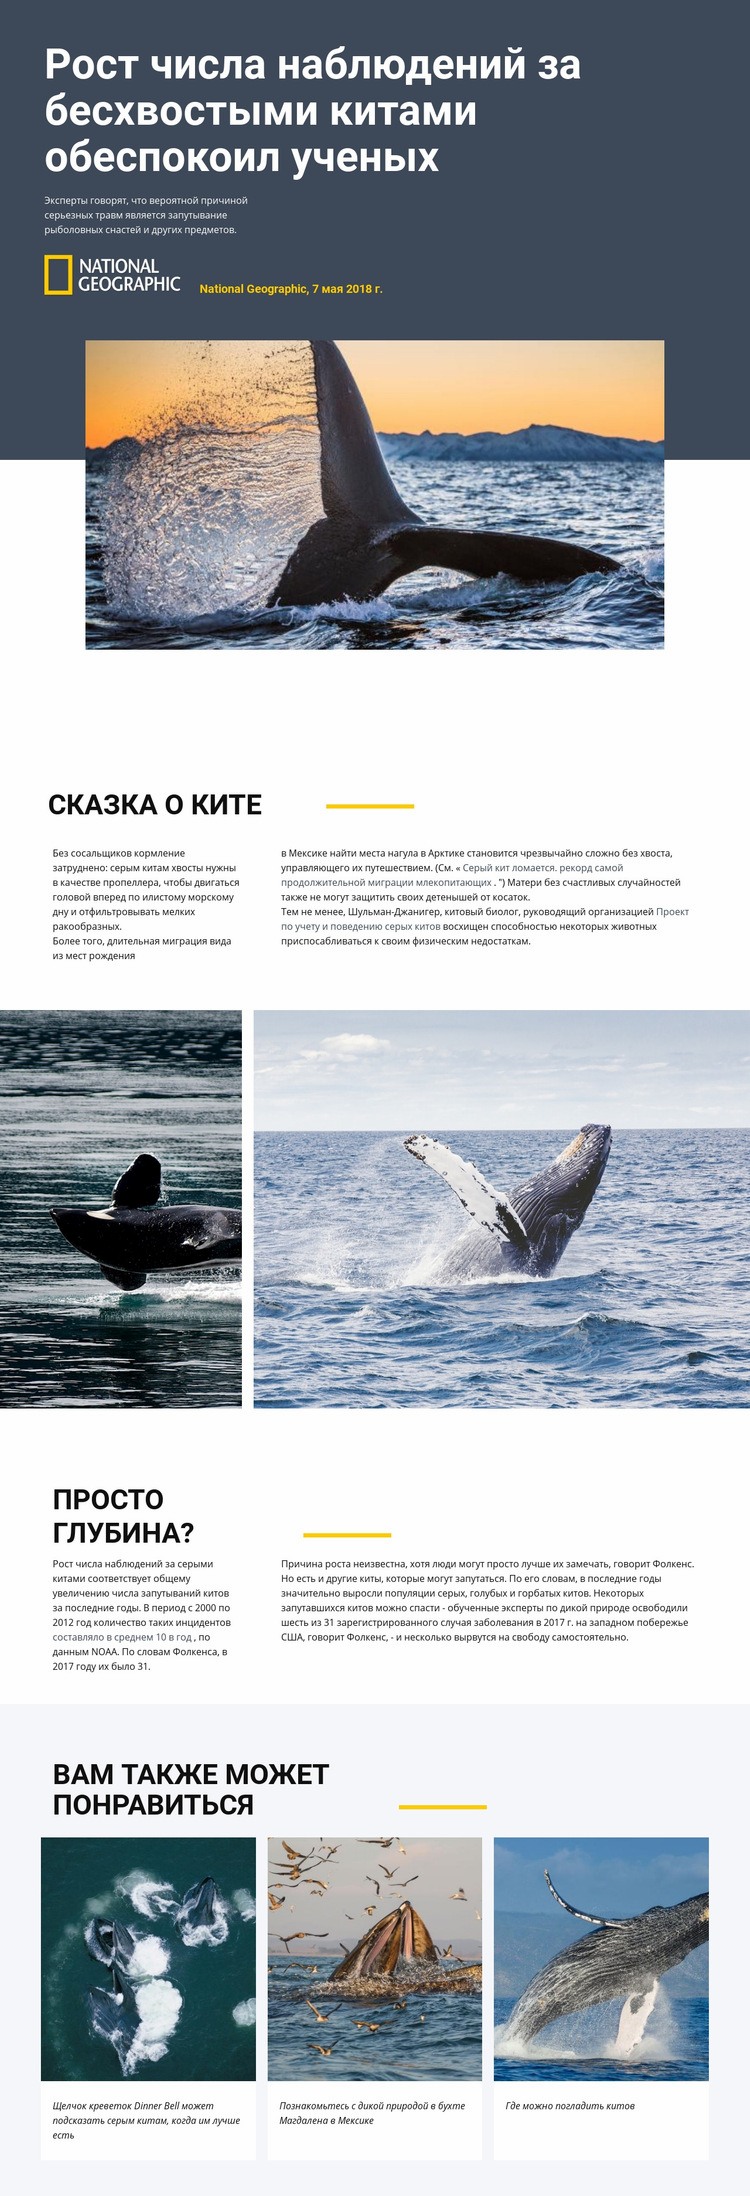 Центр наблюдения за китами Шаблон веб-сайта